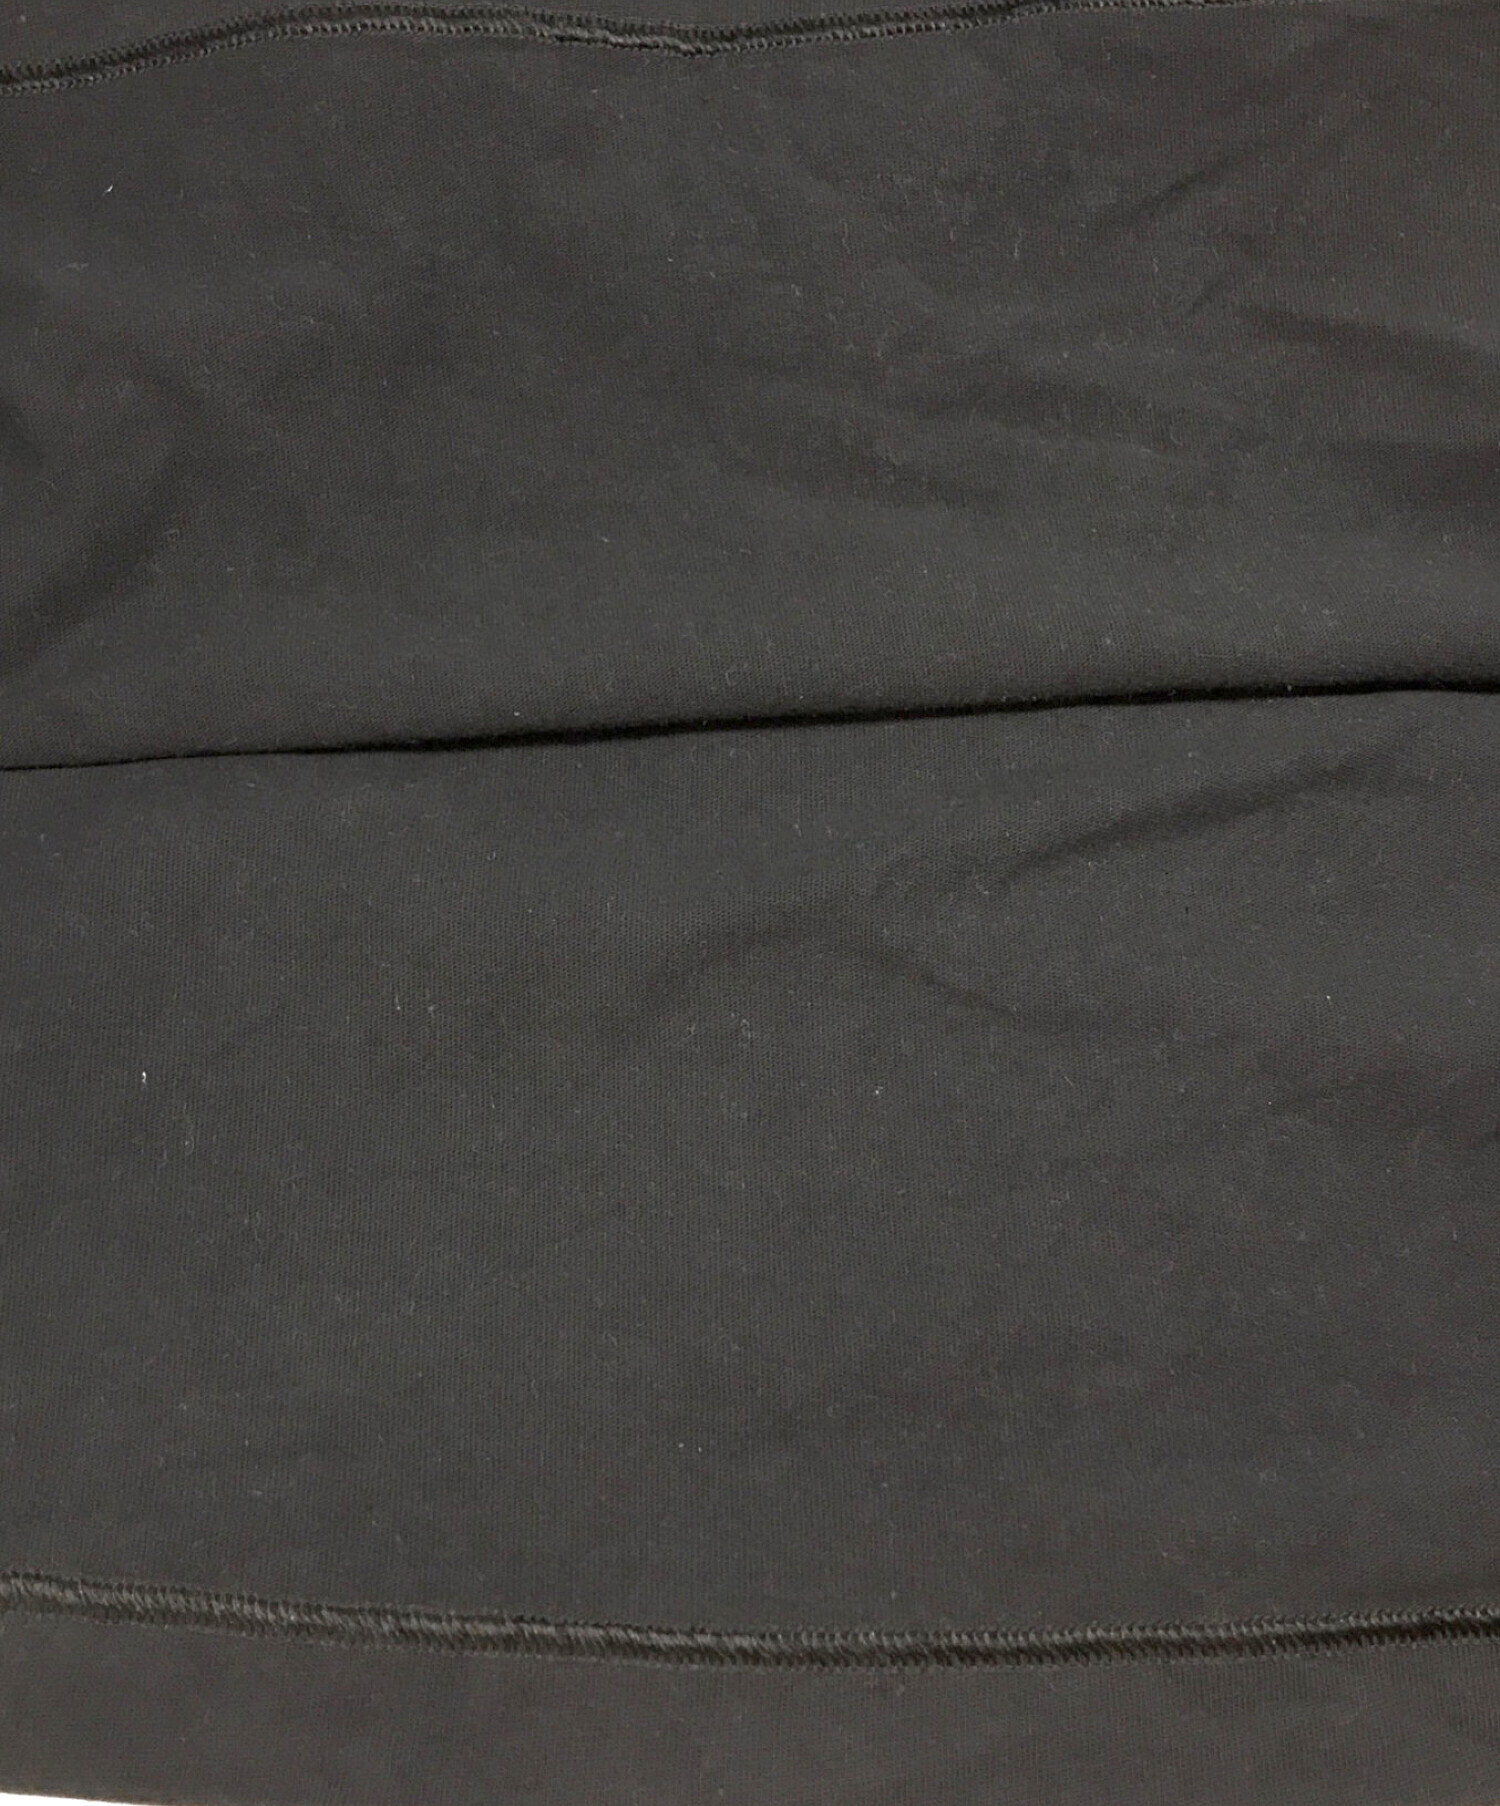 NIKE (ナイキ) PEACEMINUSONE (ピースマイナスワン) G-Dragon Long Sleeve  T-shirt/ジードラゴンロングスリーブティーシャツ ブラック サイズ:SIZE L